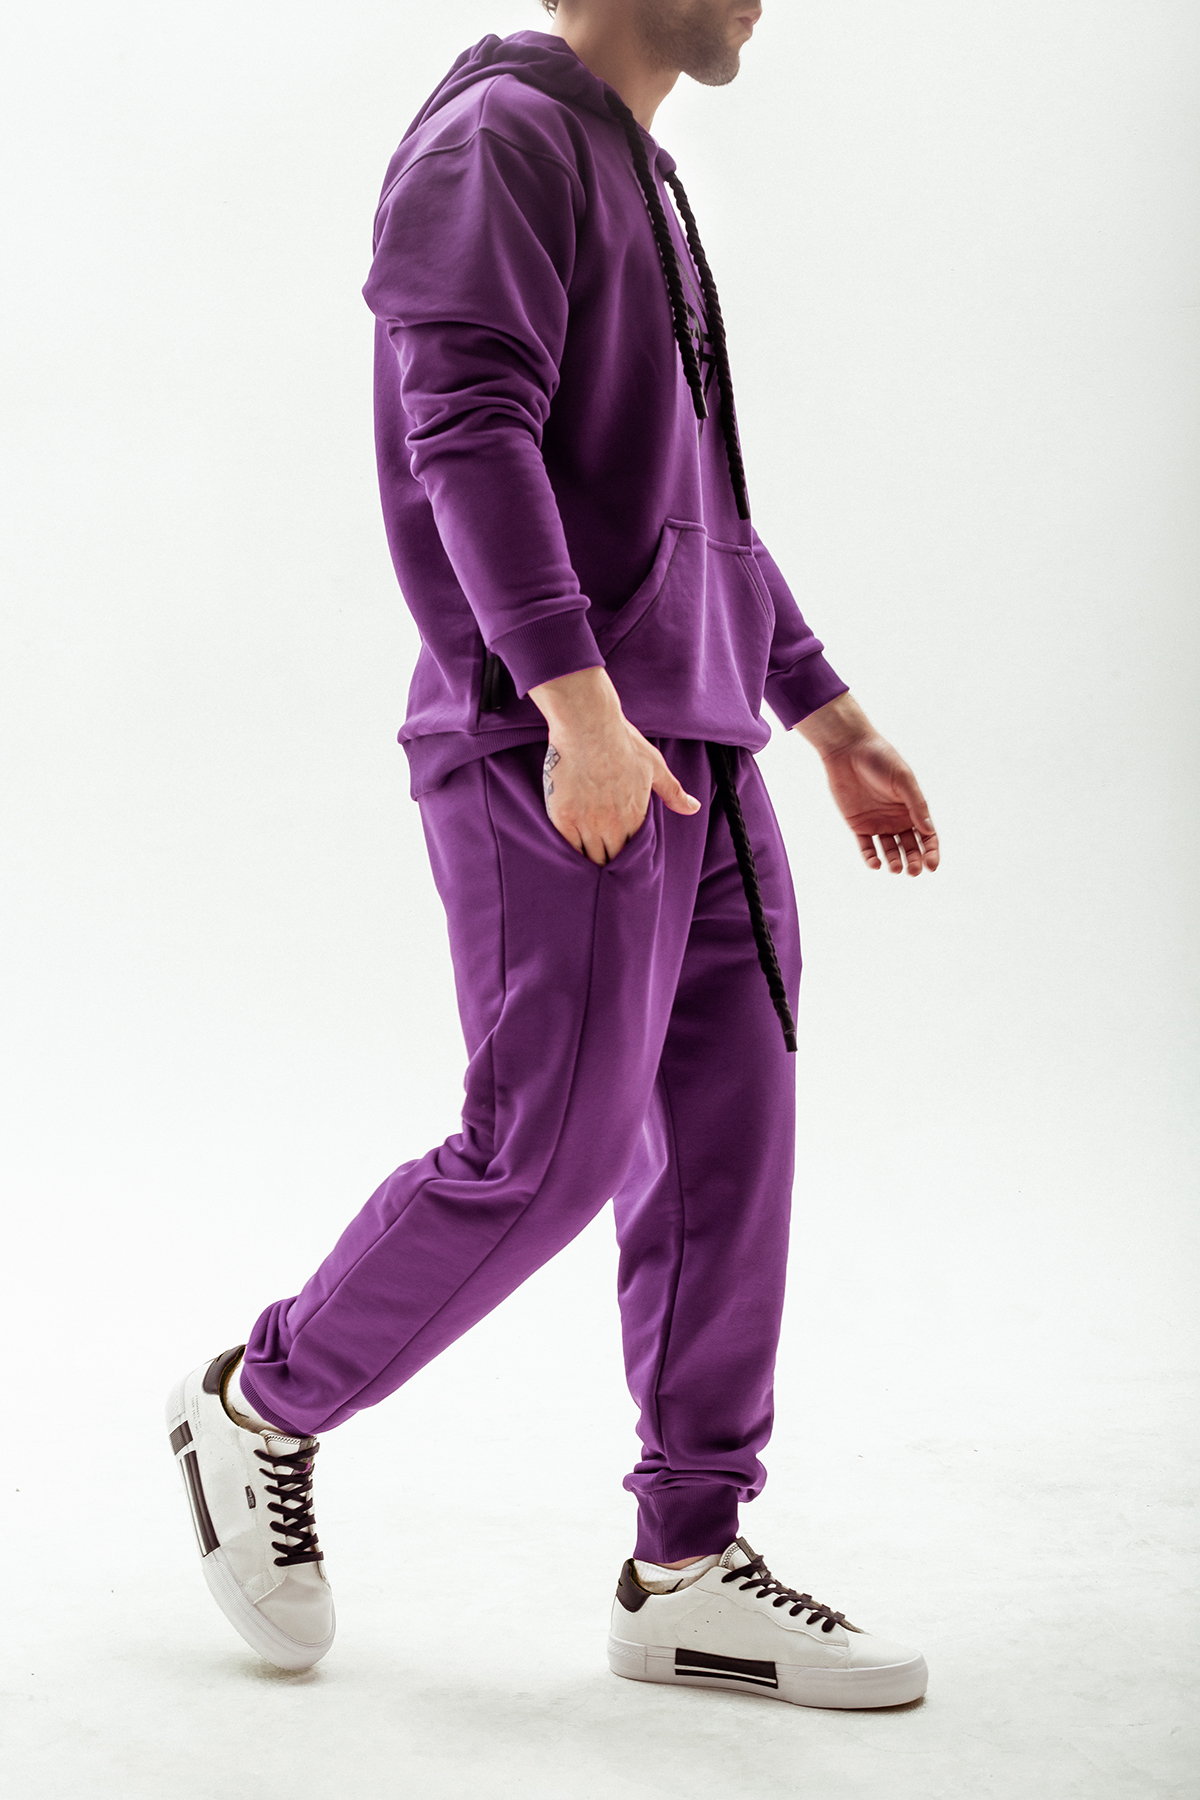 Спортивный костюм VOLЯ WEAR x BOLERO мужской (фиолетовый) – VOLЯ WEAR : VOLЯ WEAR